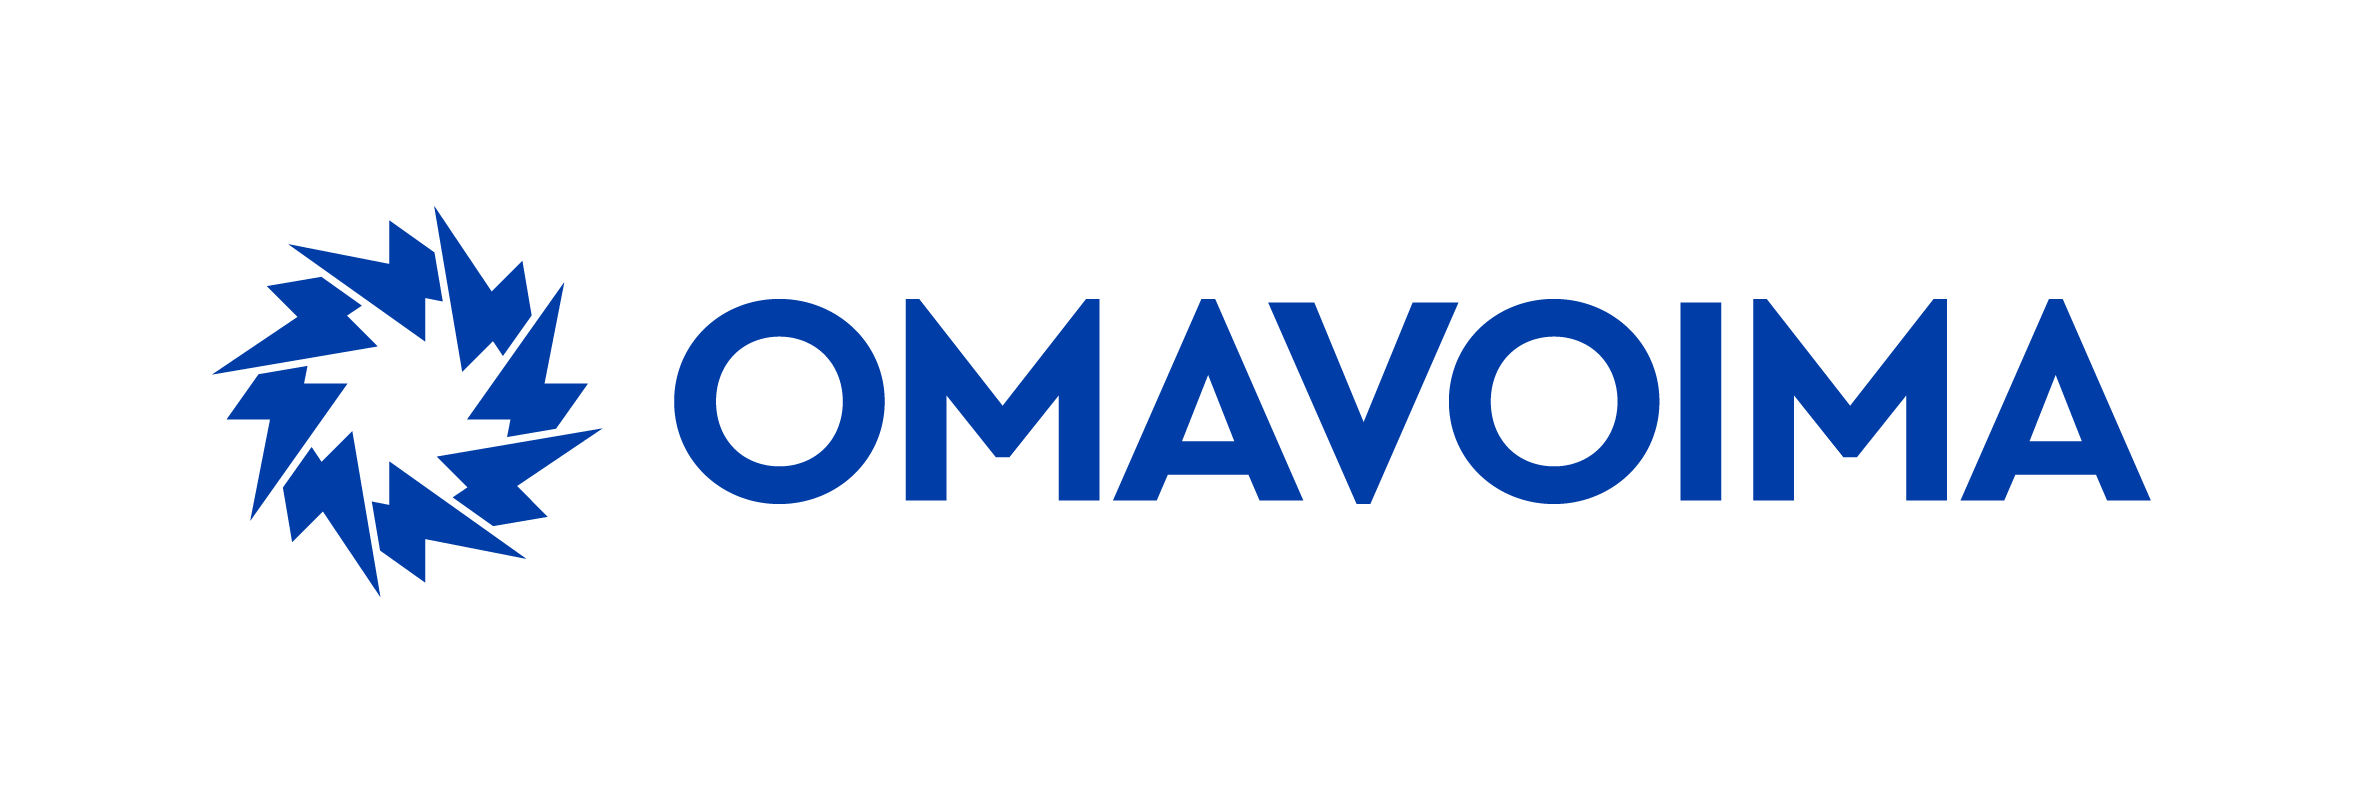 Omavoiman logo